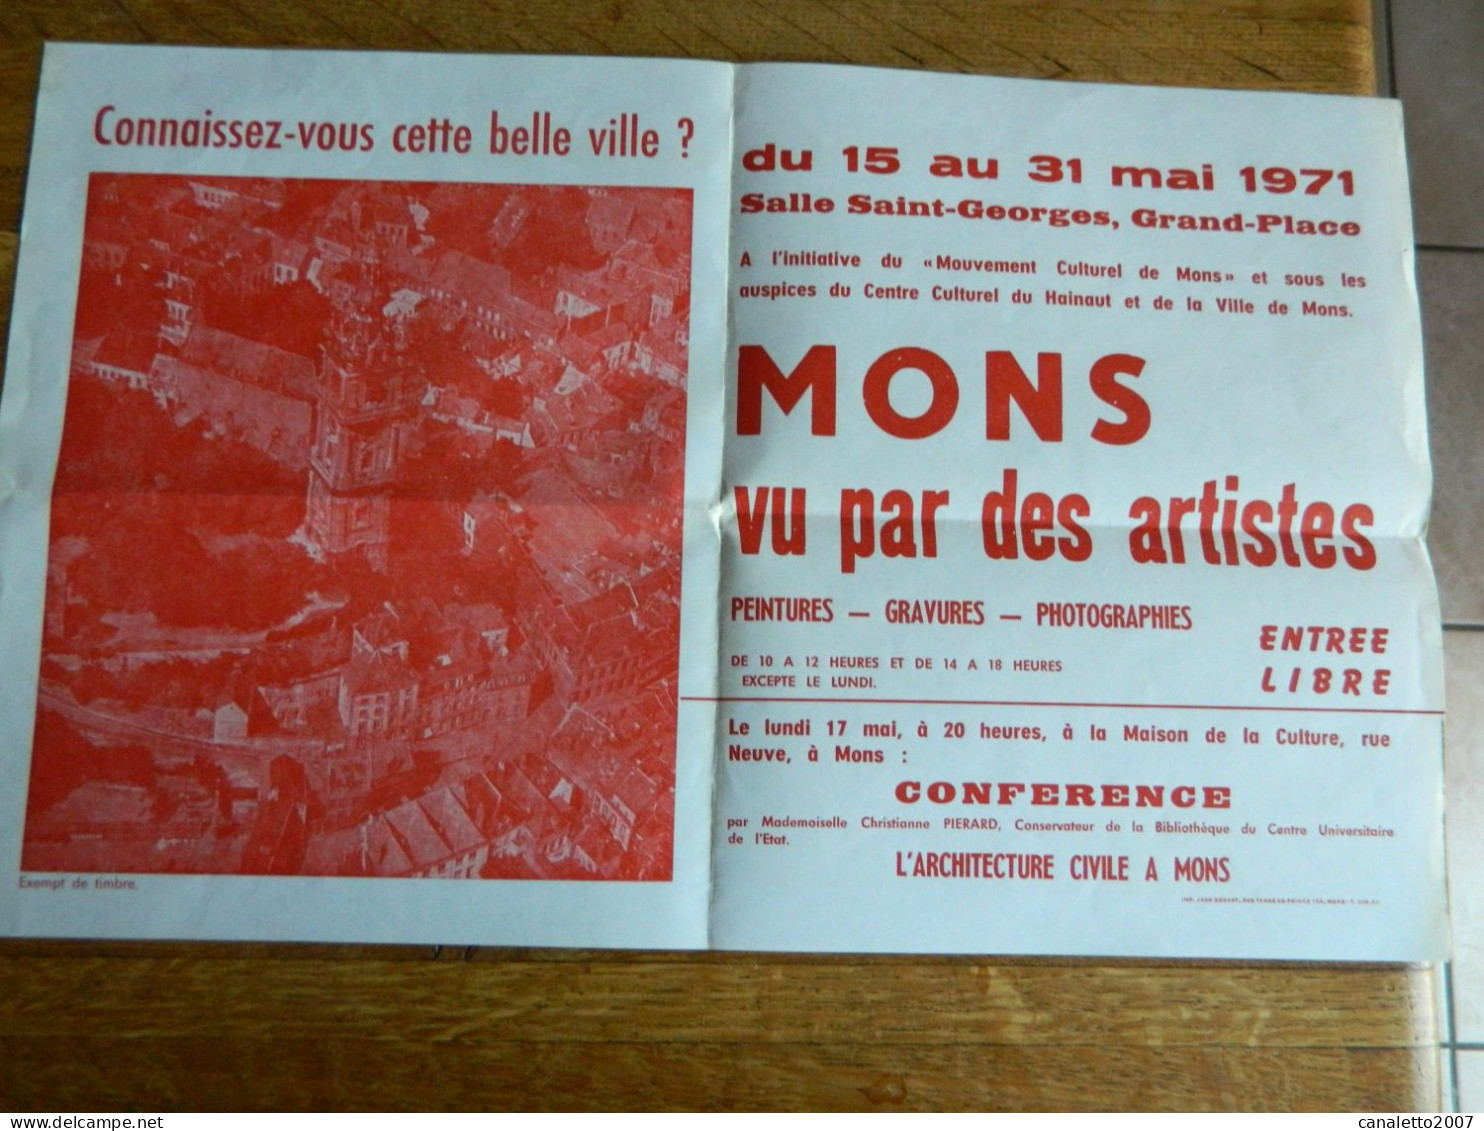 MONS: AFFICHE DE L'EXPOSITION MONS VU PAR DES ARTISTES SALLE ST GEORGES DU 15 AU 31 MAI 1971 - Afiches